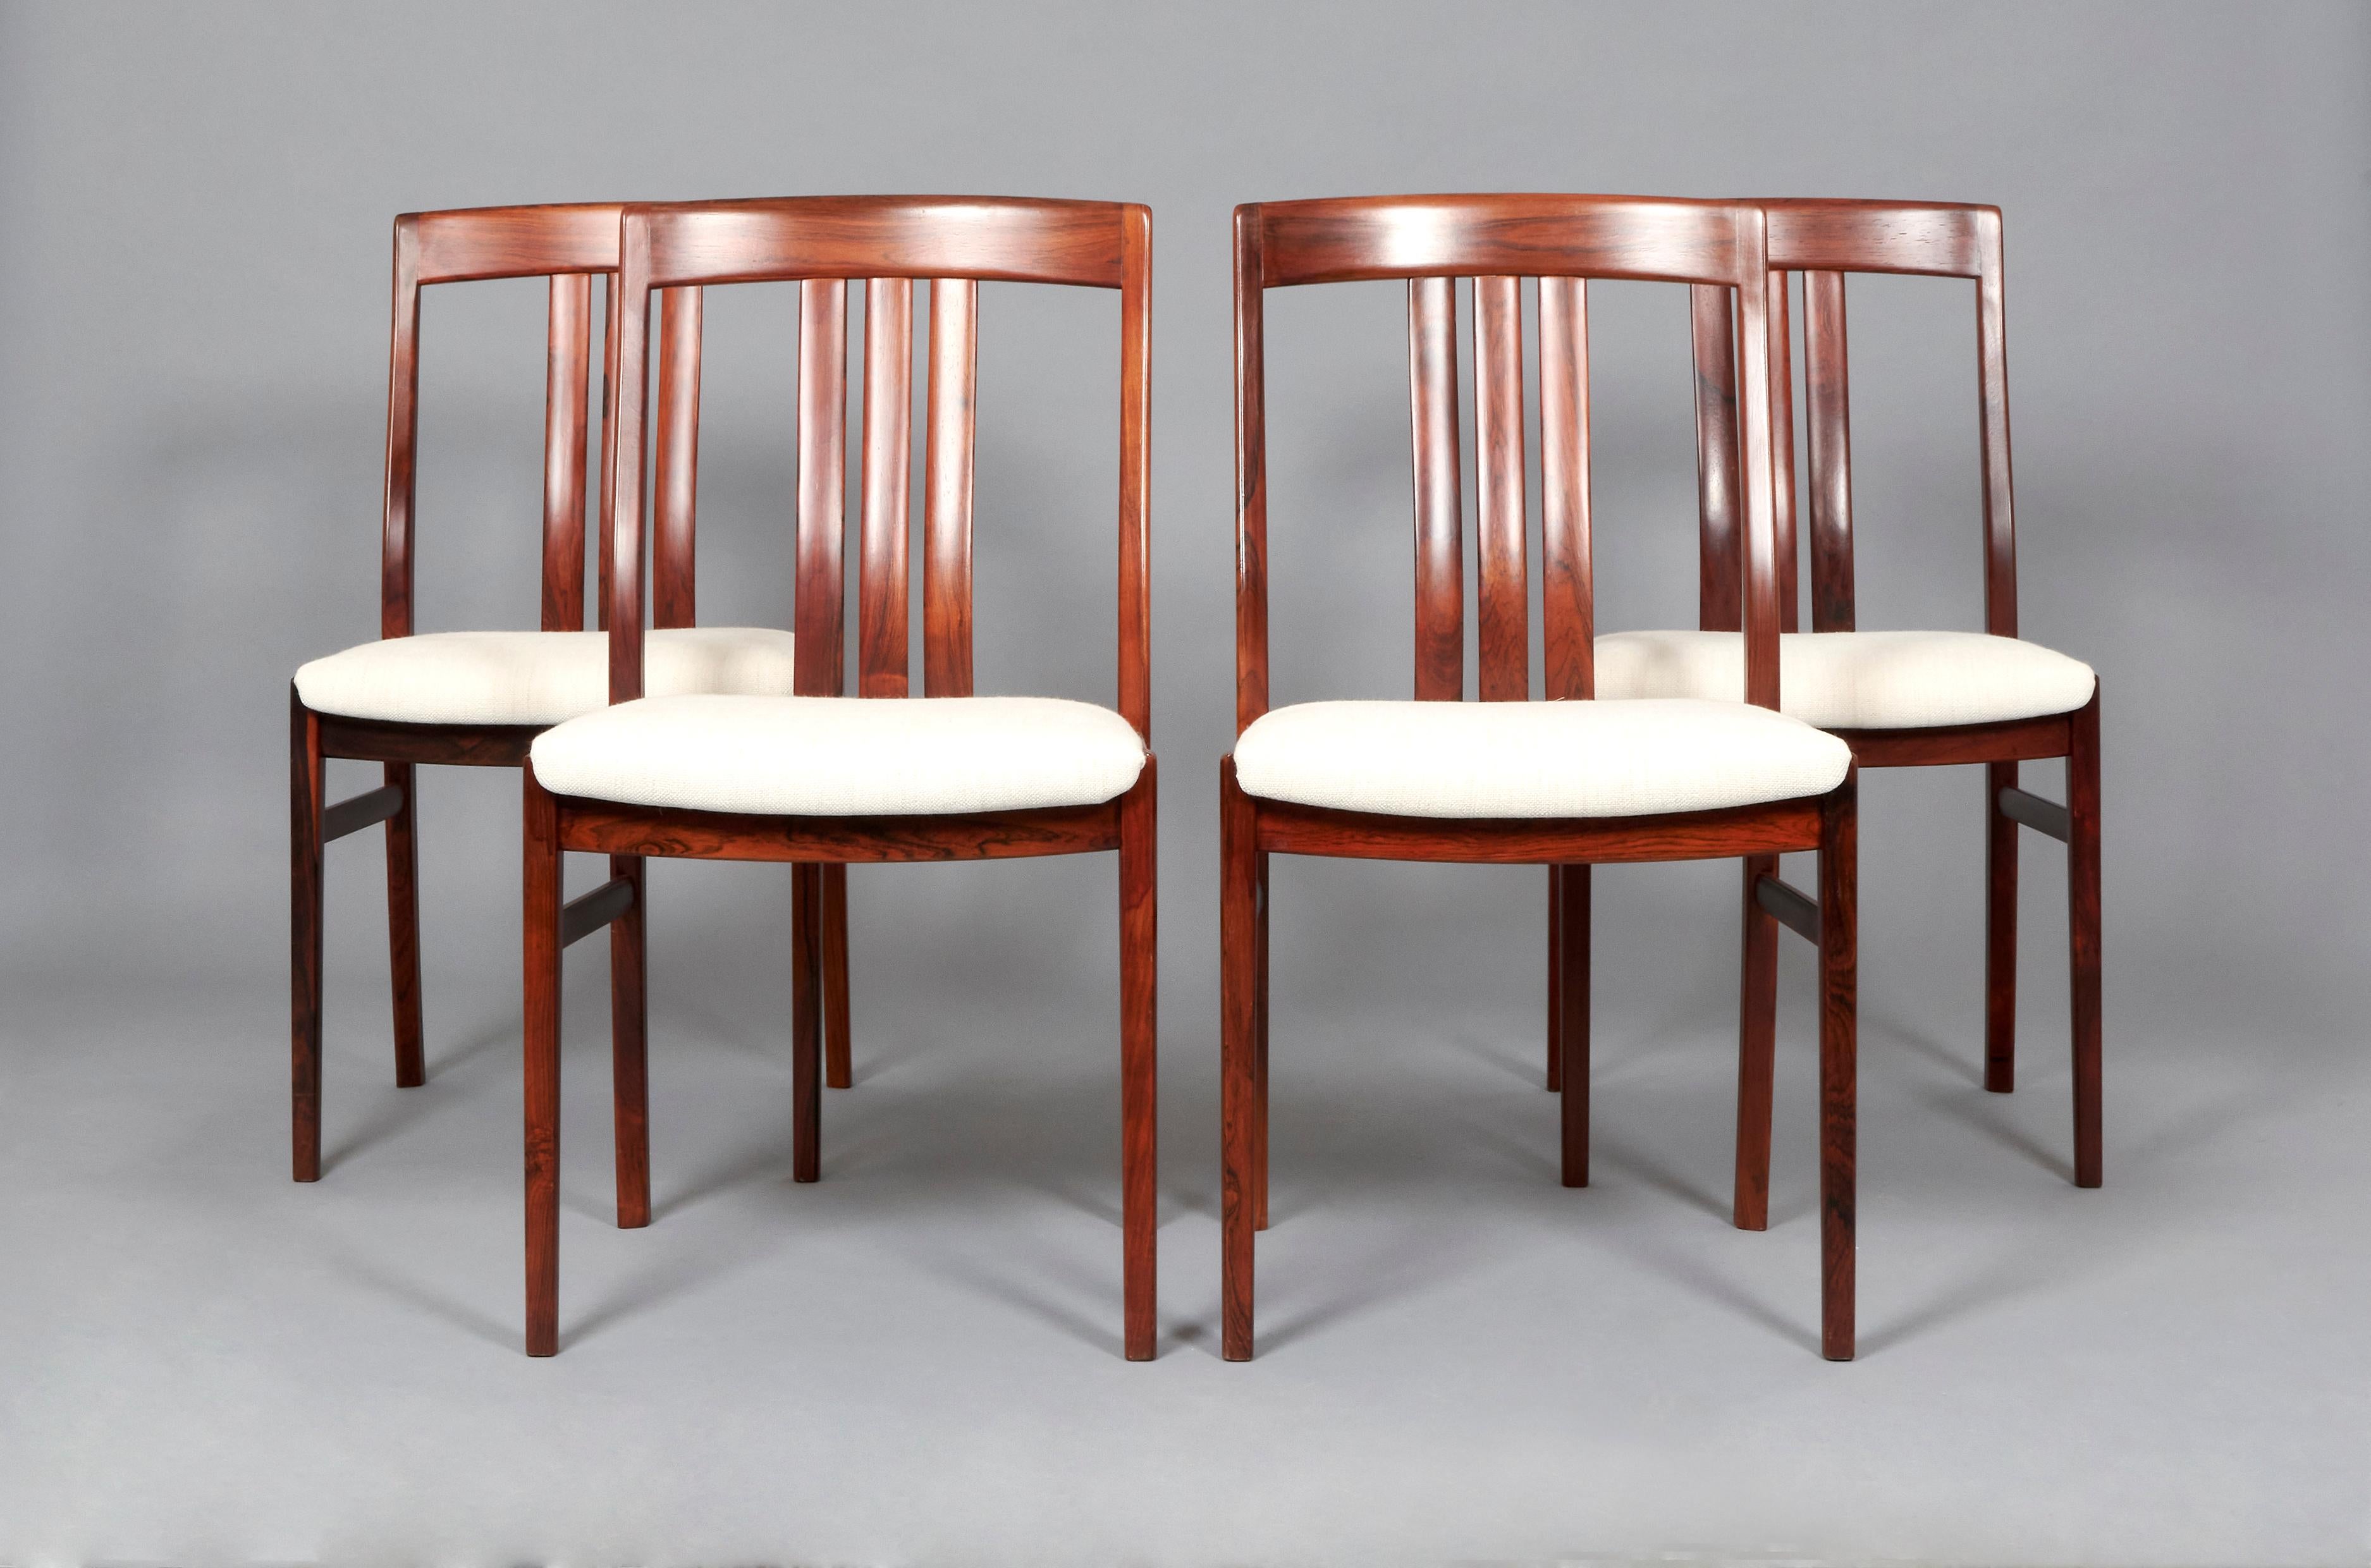 Esstischgarnitur eines anonymen Designers, bestehend aus vier Stühlen, hergestellt aus Palisanderholz und Polsterung. Schweden, 1960er Jahre 
Ausgezeichneter Vintage-Zustand, restauriert und neu gepolstert. Kann aufgrund von Zeit und Gebrauch